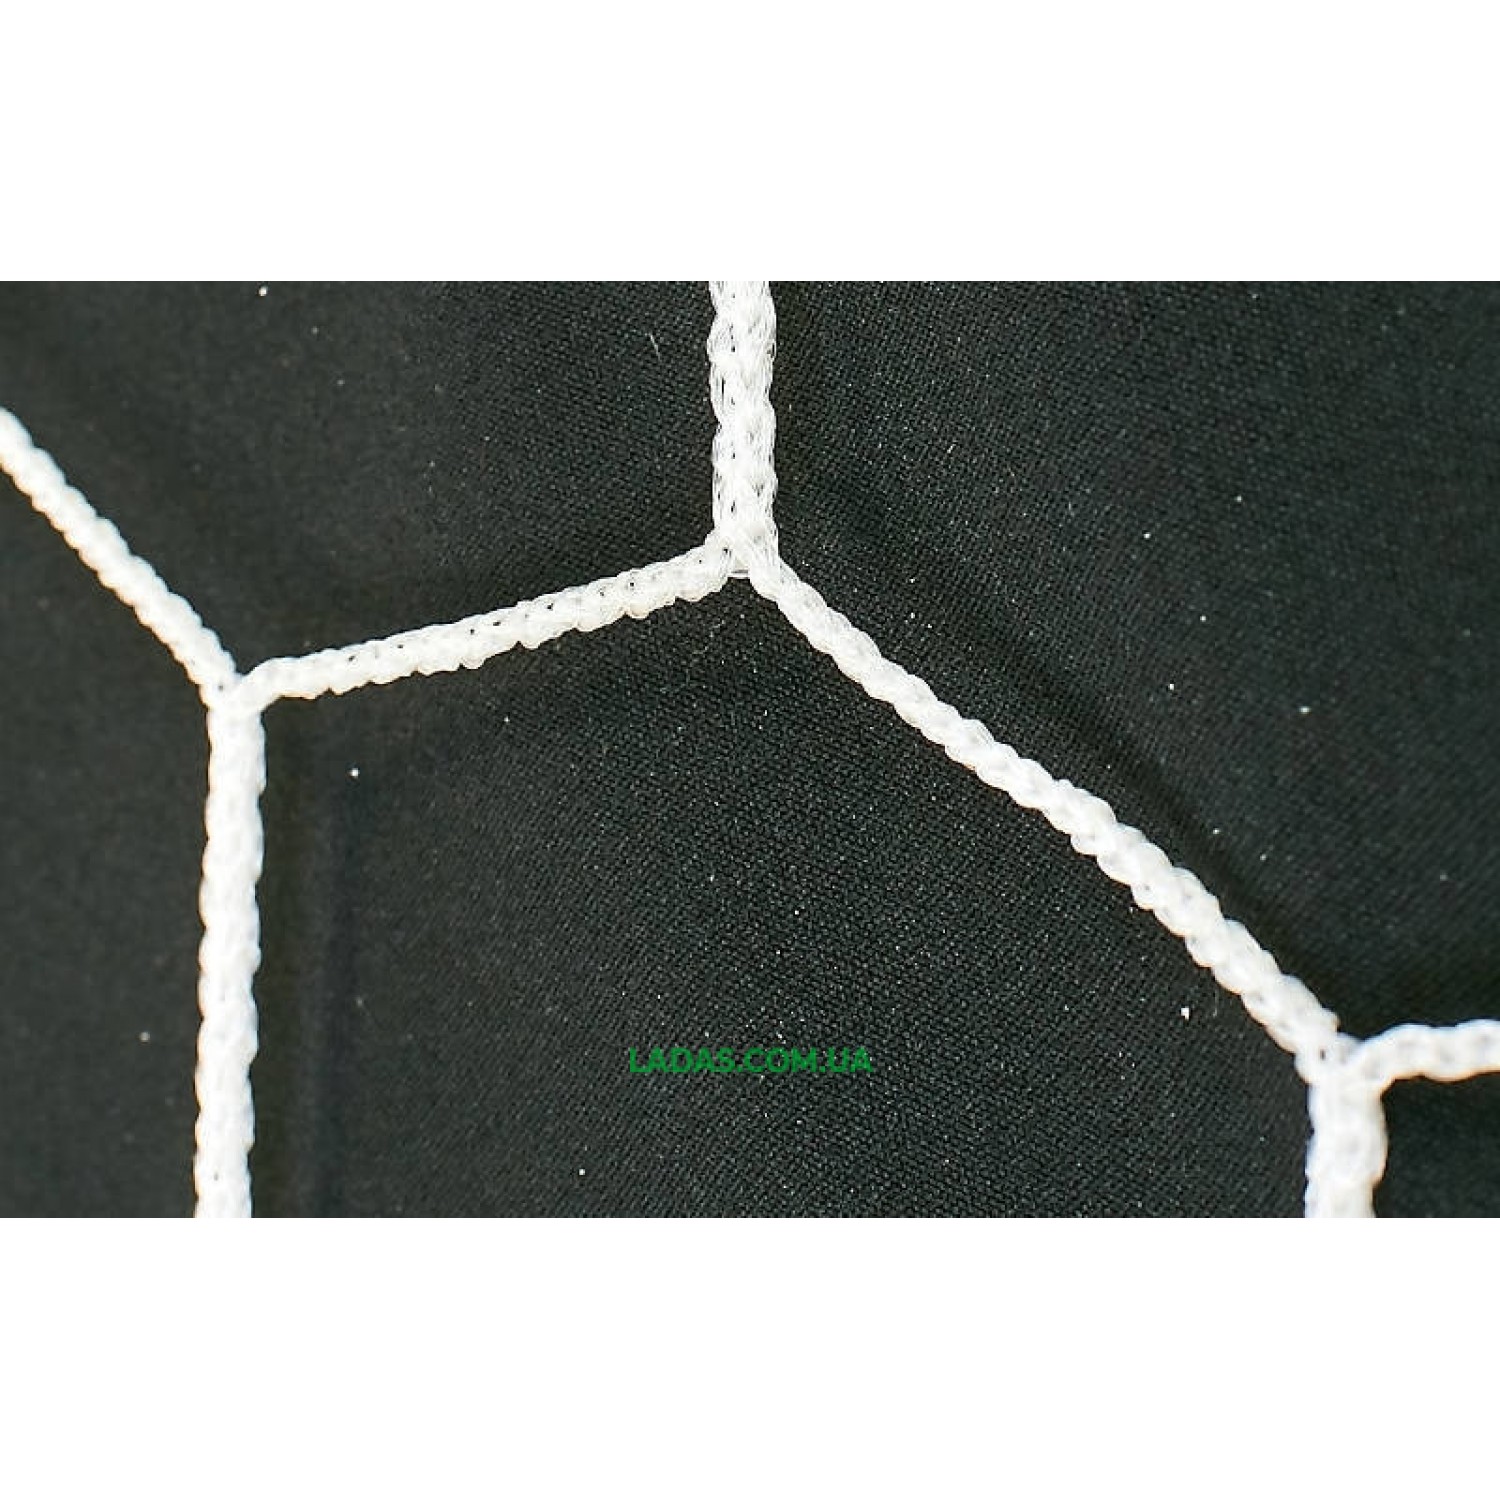 Сетка на ворота футбольные тренировочная безузловая (2шт)(нить 2,5мм, р-р 7,4*2,5*2 м)